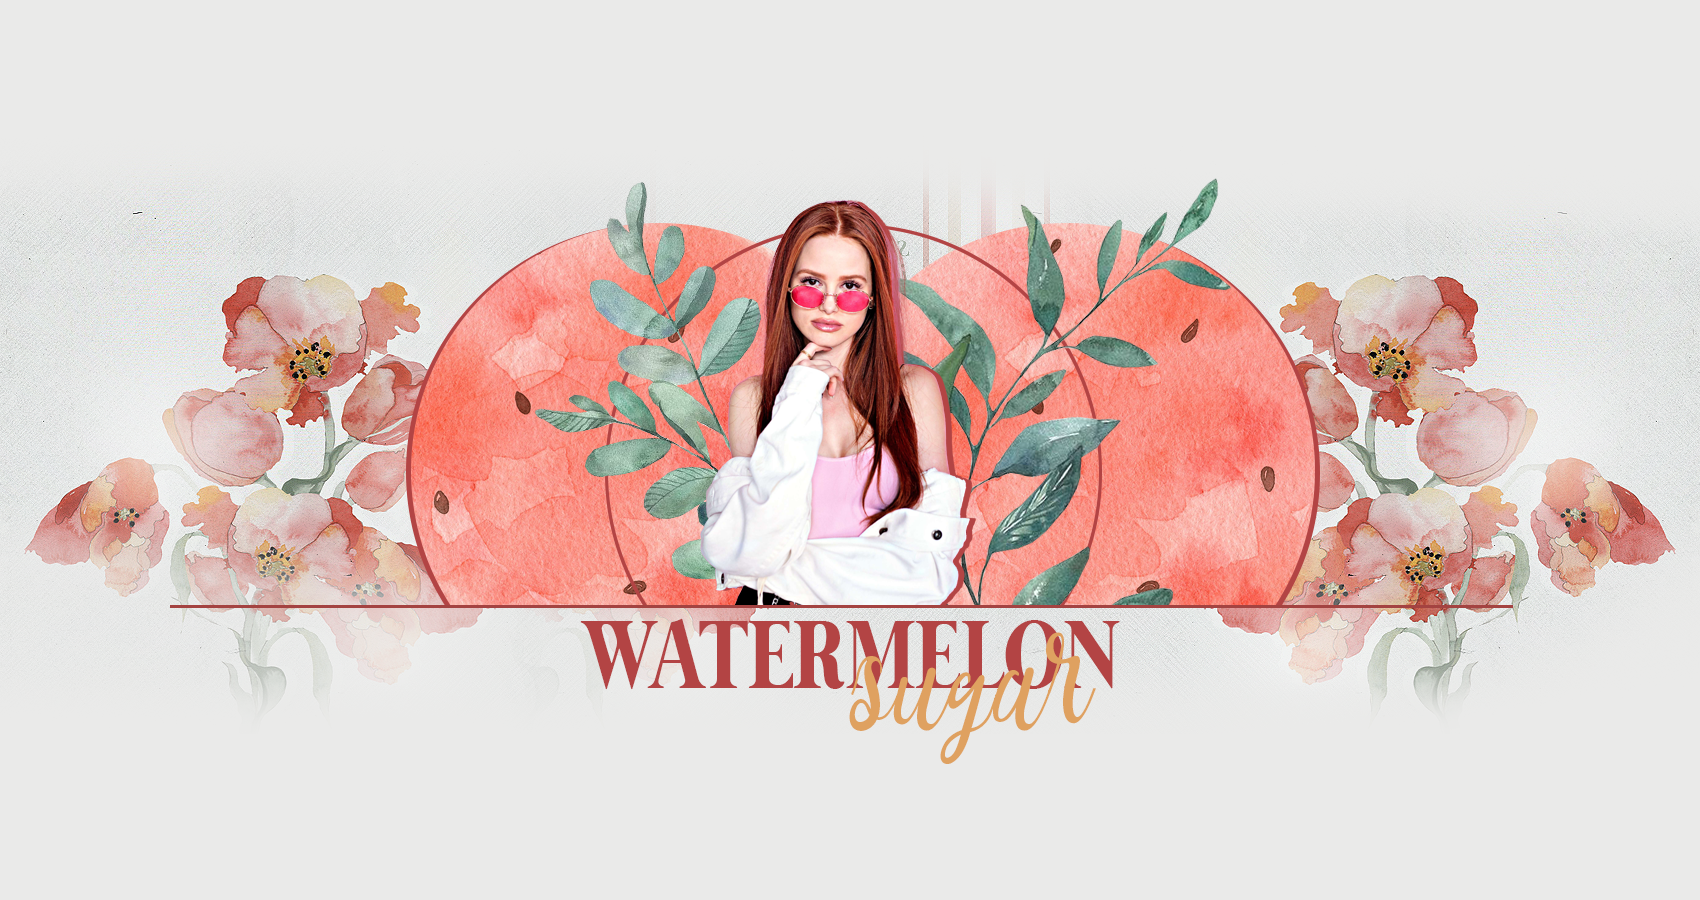 watermelon sugar + city chill/retour aux sources Km6a0p